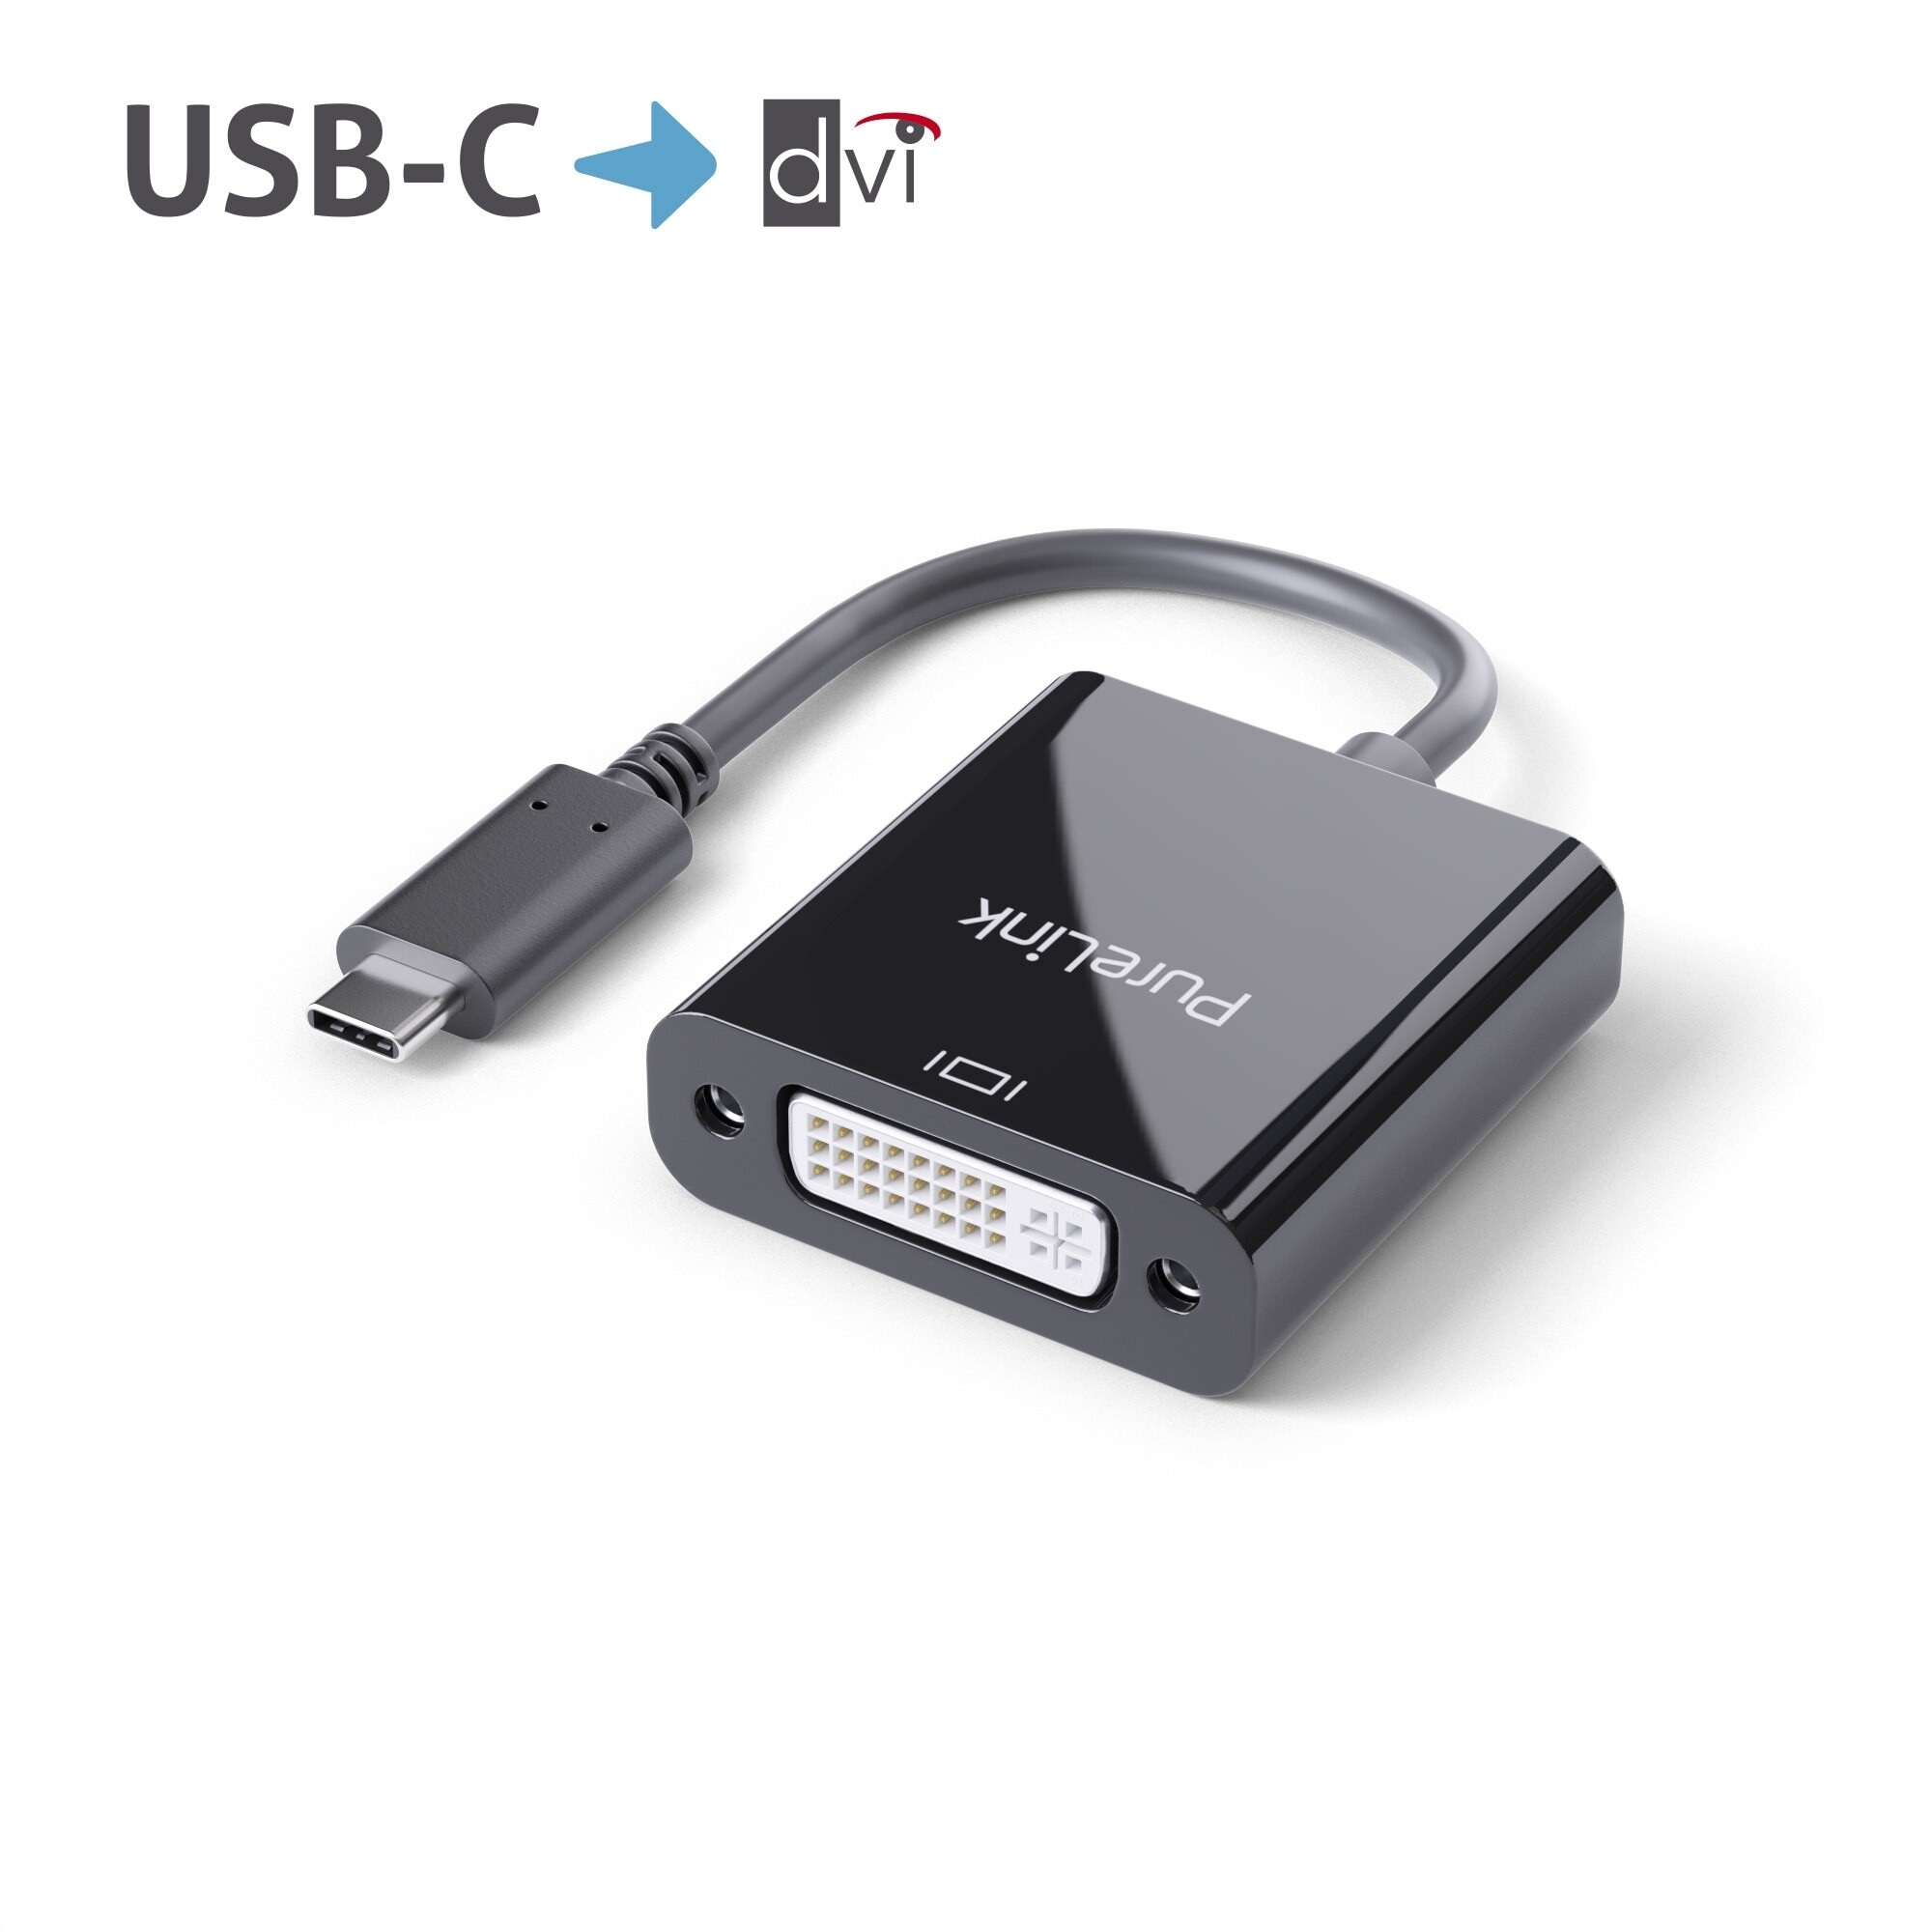 Purelink-IS191-USB-C-auf-DVI-Adapter-0-1m-schwarz